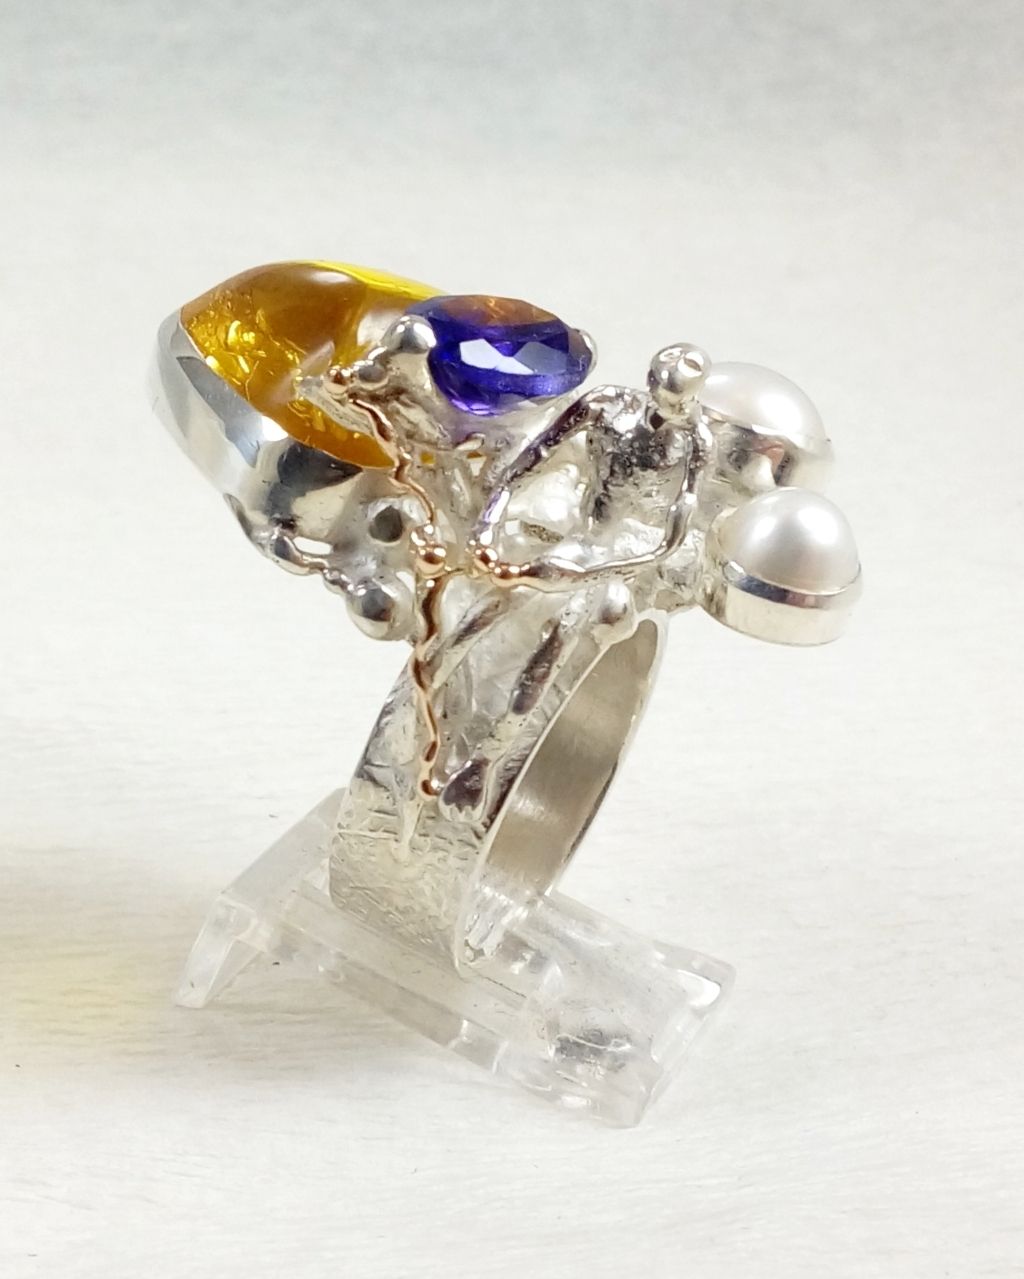 gregory pyra piro skulpturell ring, smykker med levering i Oslo, smykker med levering i Norge, håndlaget ring laget av håndverker, ring med rav og ametyst, ring med ametyst og perle, ring laget av sølv og gull, ring solgt i kunstgalleri